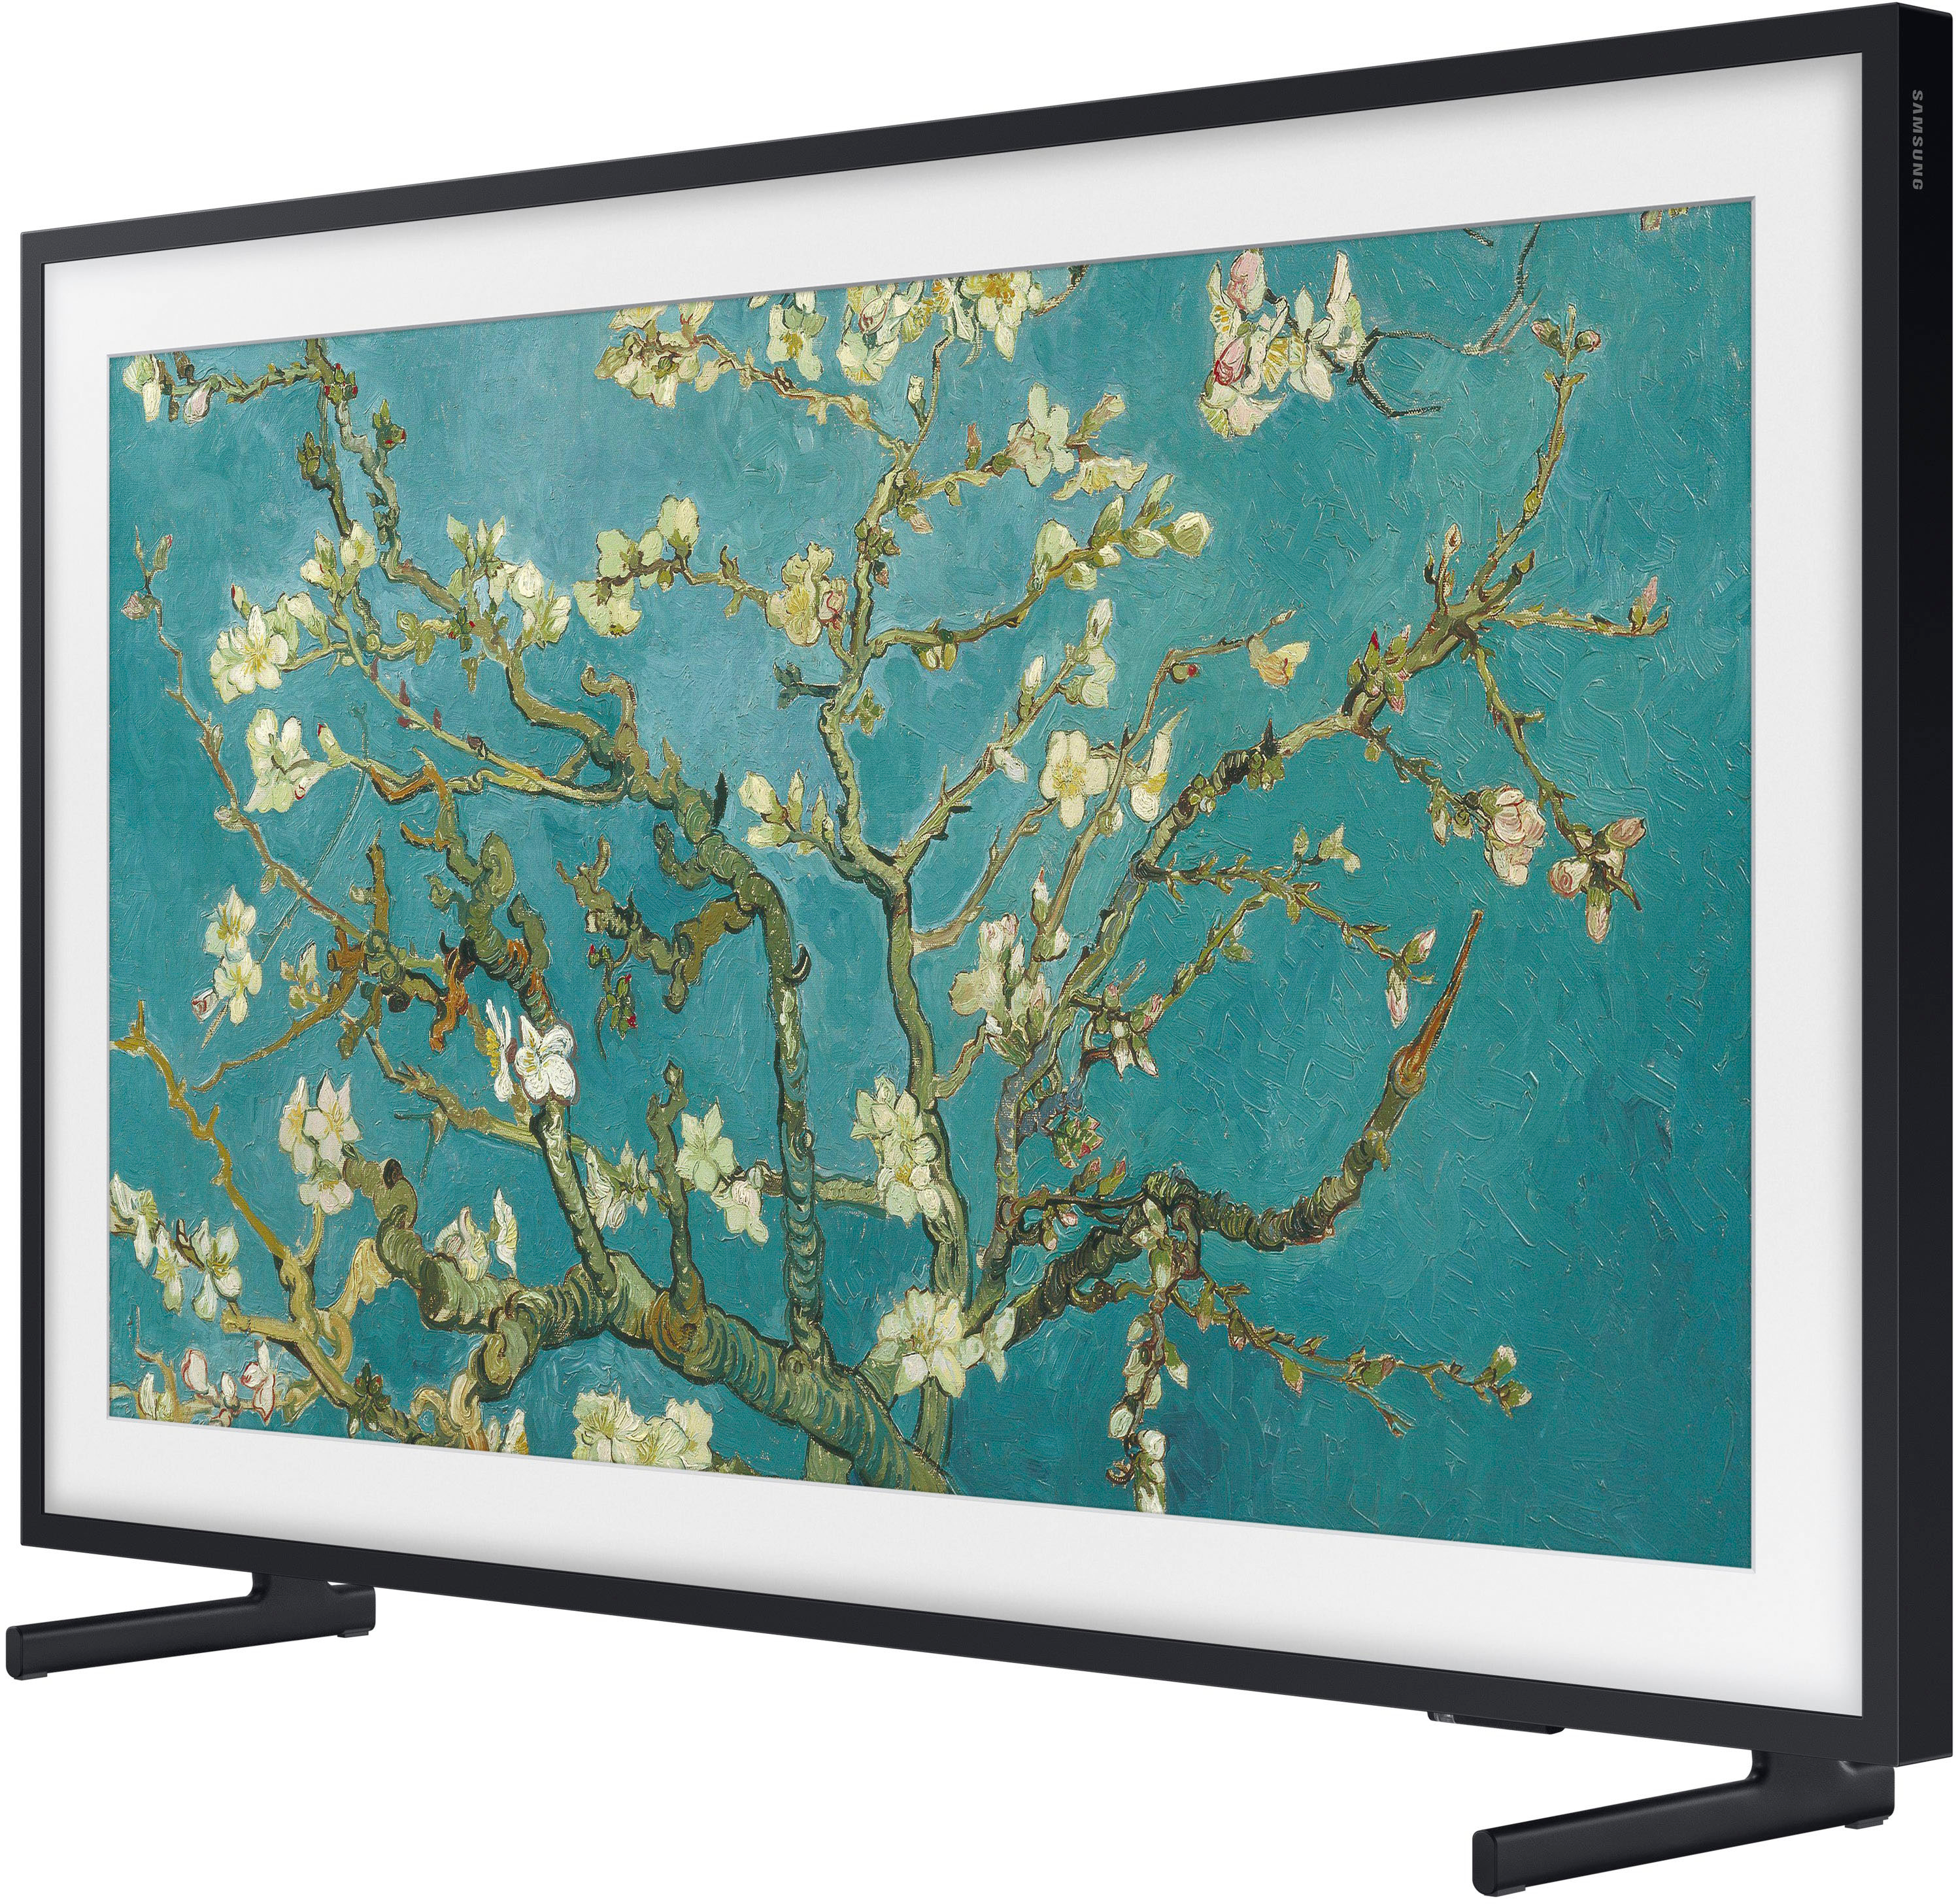 ② Samsung Smart TV QLED 43pouces 4K Quantum HDR + Accessoires